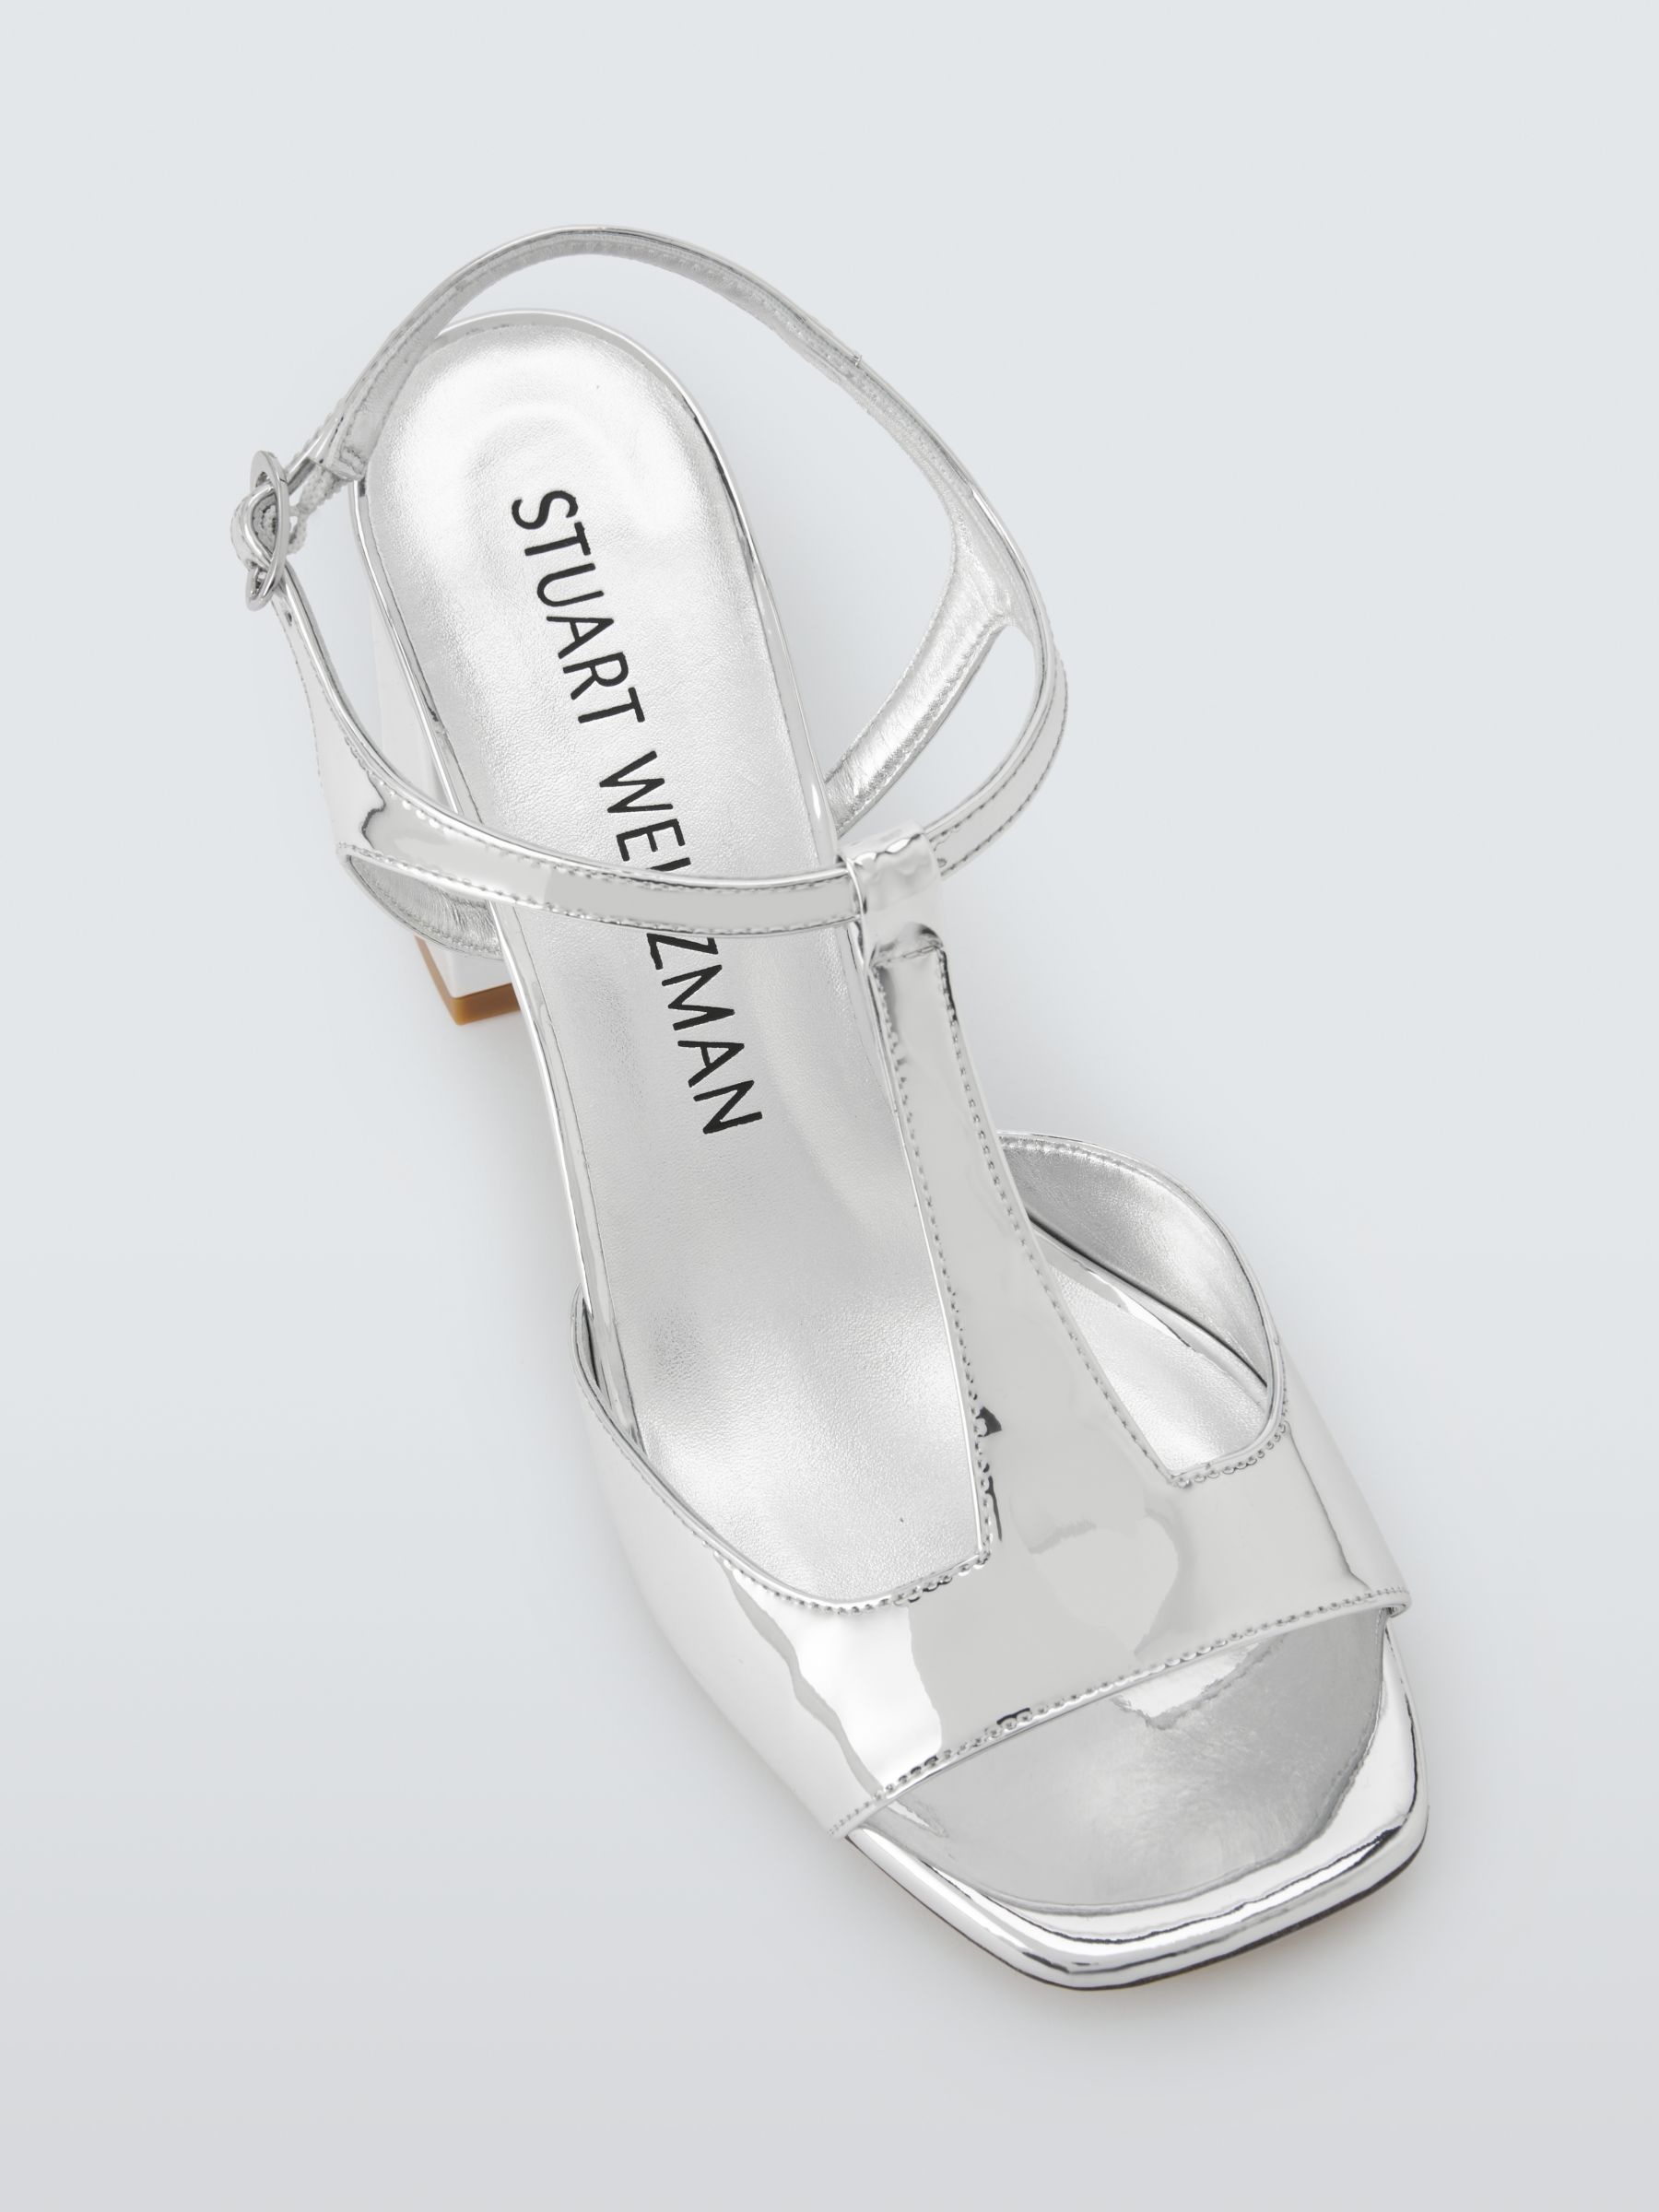 Stuart Weitzman Nudista 75 Block Heel Sandals, Silver, 6